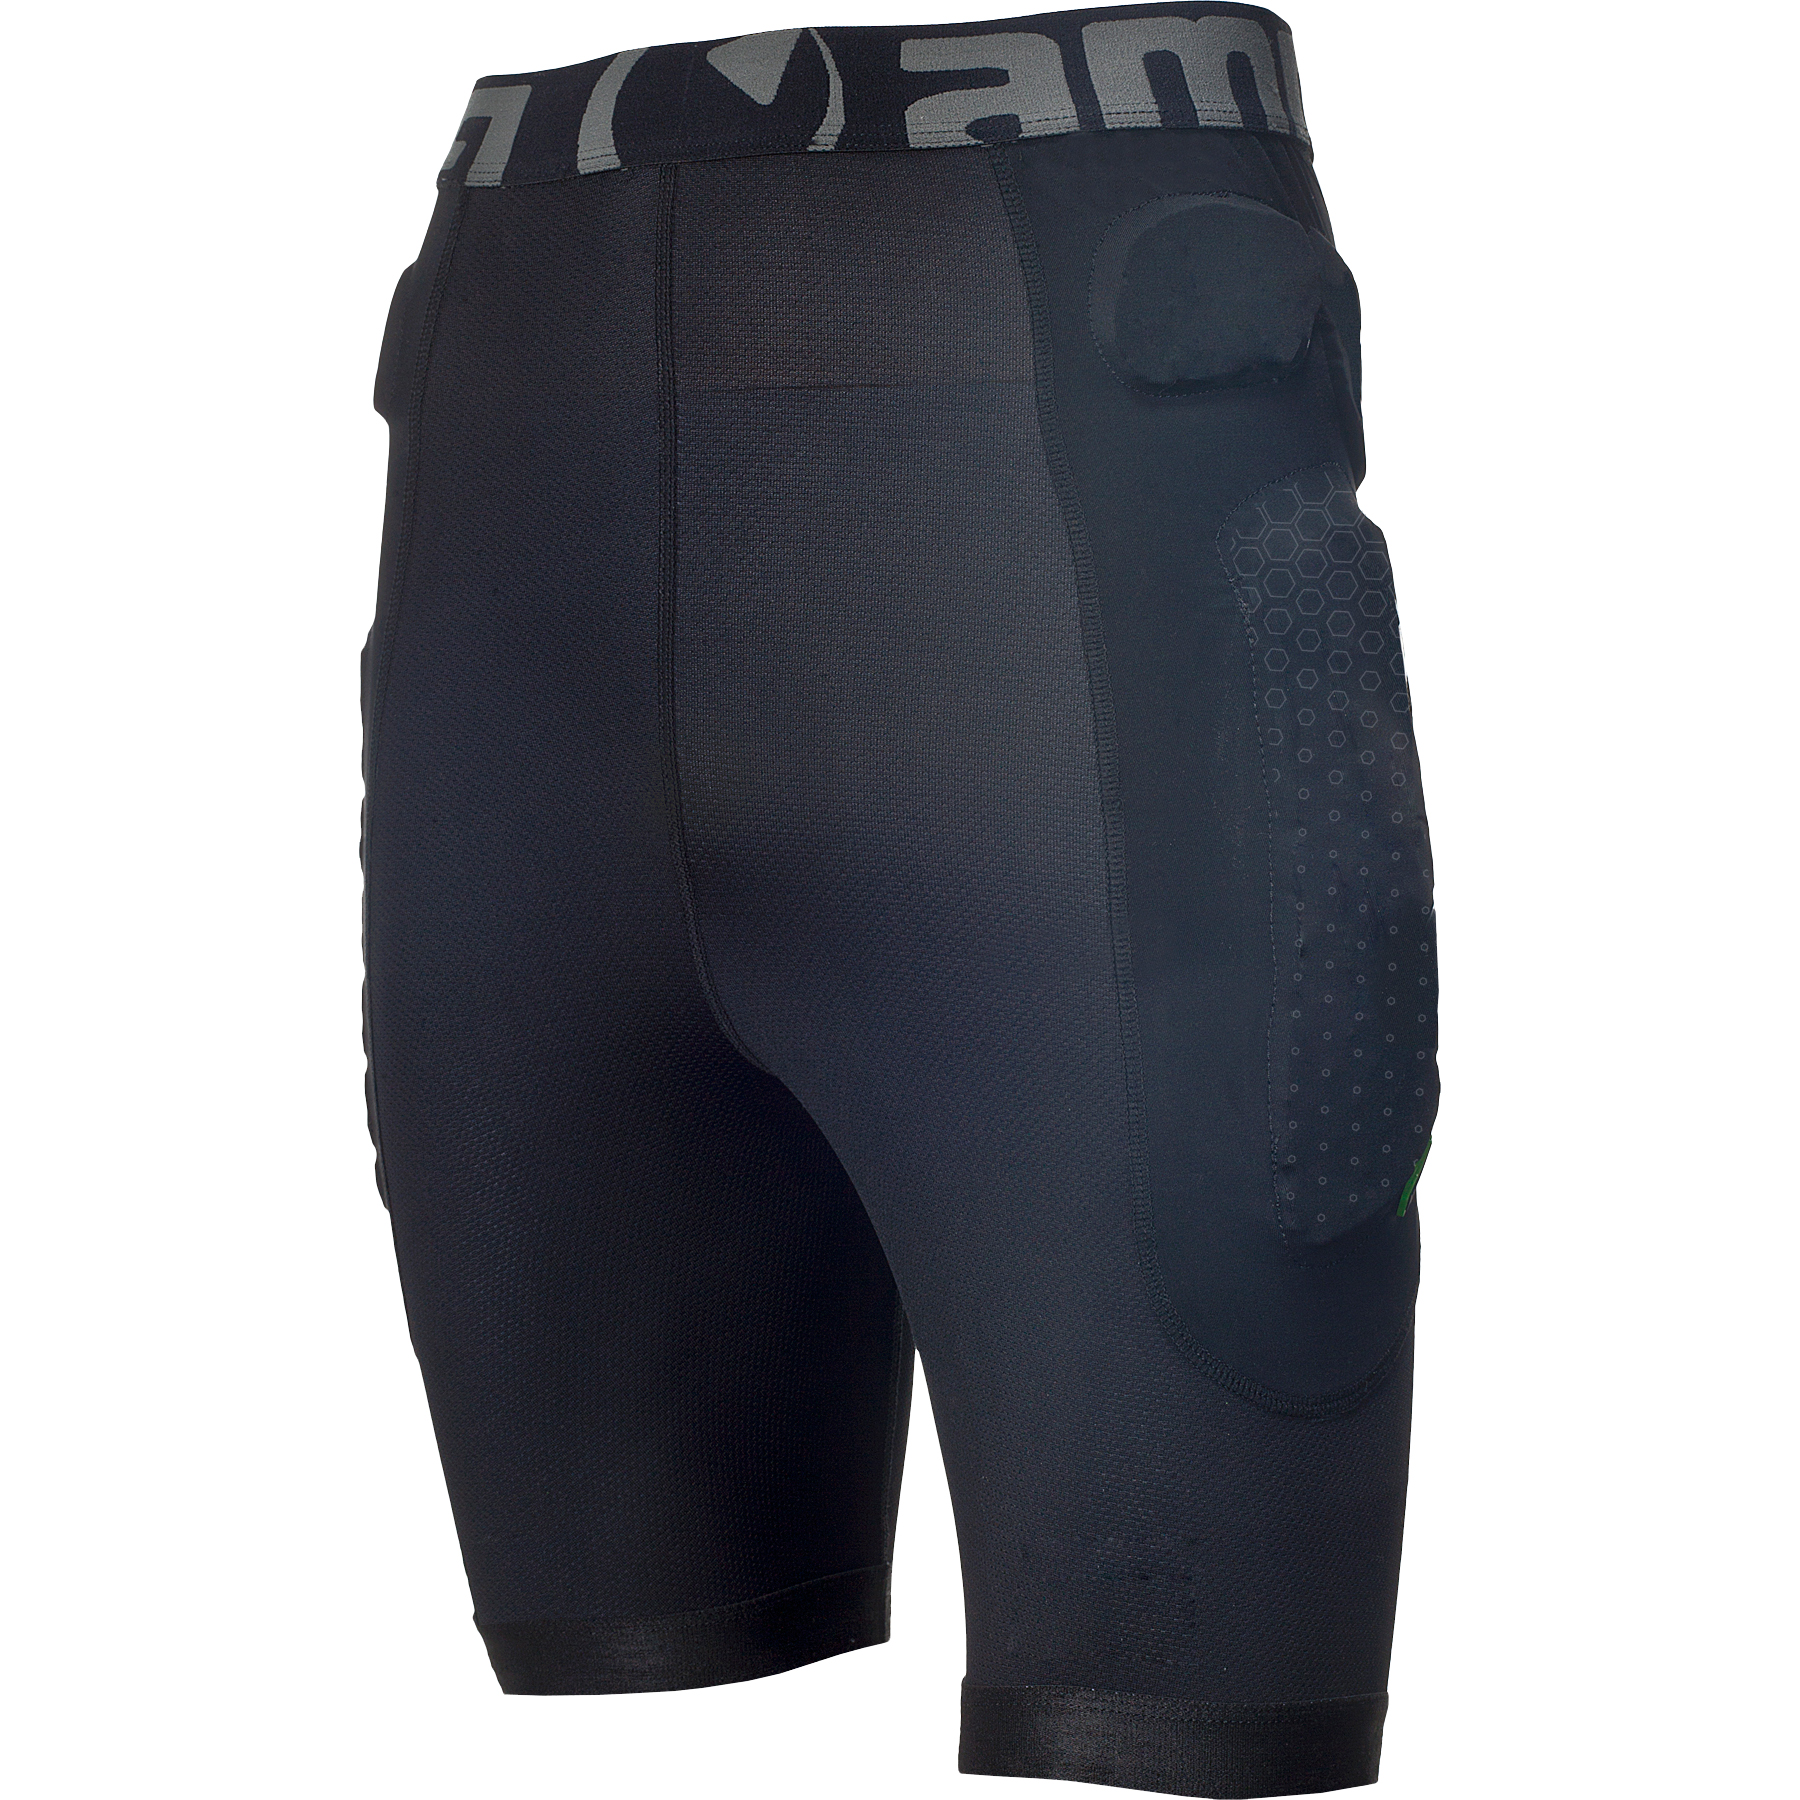 Produktbild von Amplifi MKX Pants Protektorenhose - schwarz